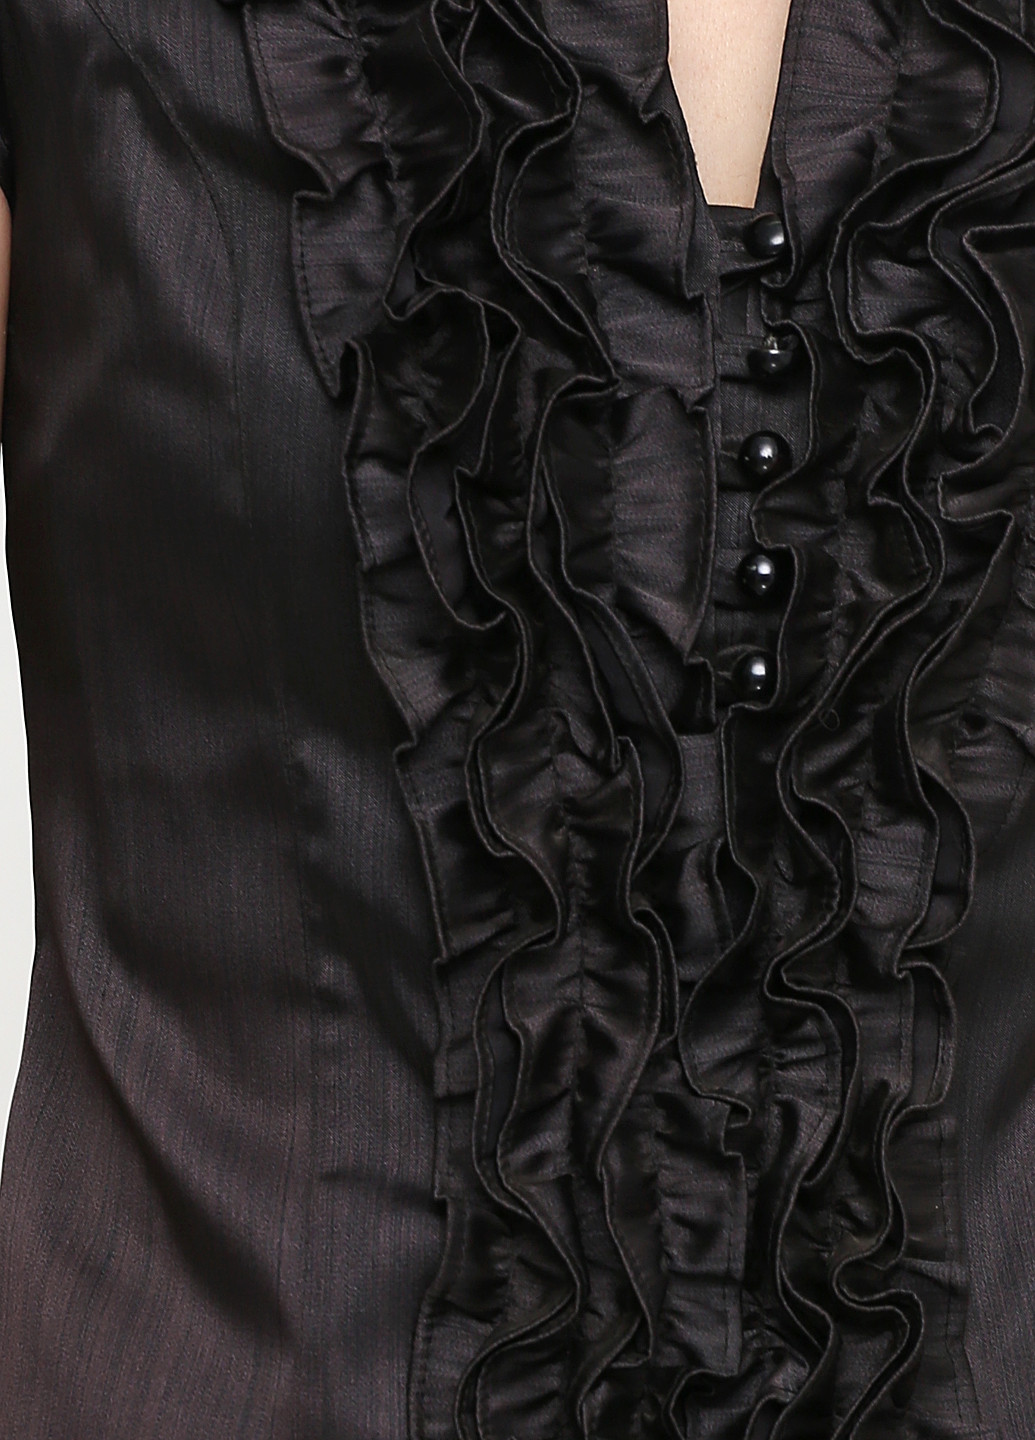 Черное коктейльное платье футляр Fashion однотонное